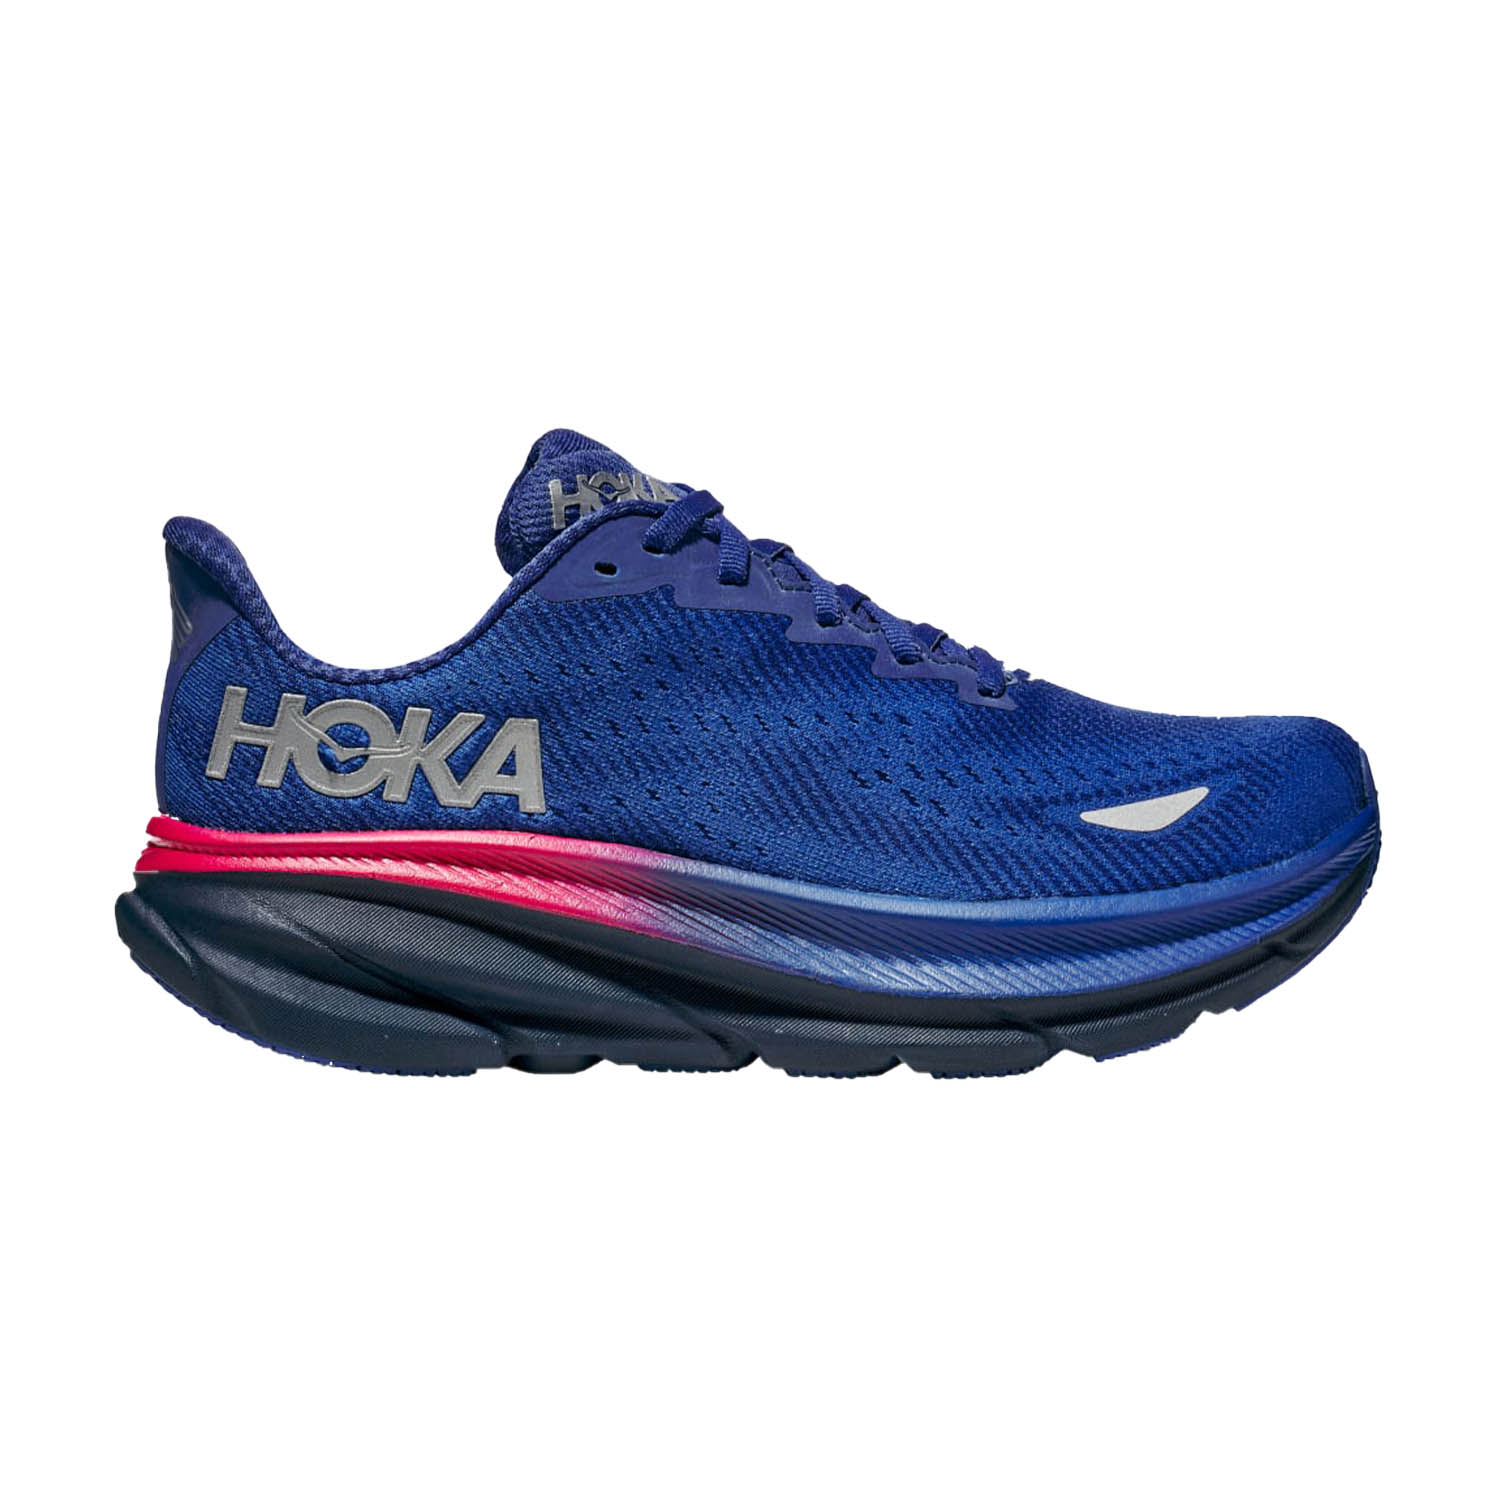 zapatillas de running HOKA mujer talla 43.5 azules, KratosShops